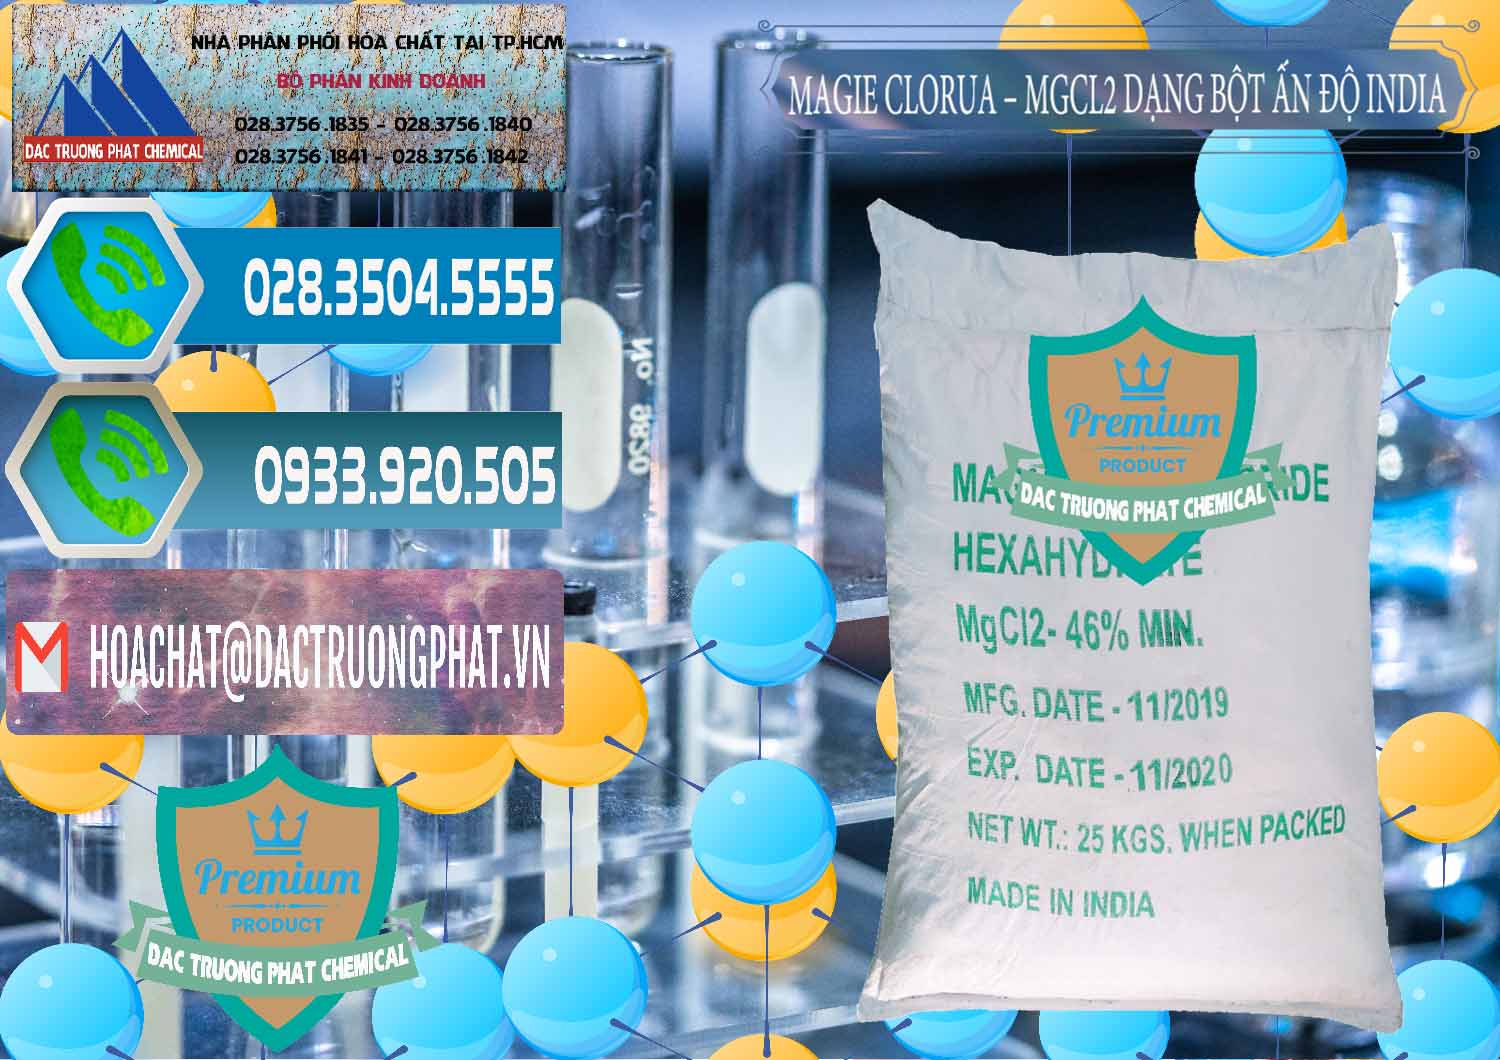 Nơi chuyên cung cấp - bán Magie Clorua – MGCL2 96% Dạng Bột Ấn Độ India - 0206 - Chuyên cung cấp - nhập khẩu hóa chất tại TP.HCM - congtyhoachat.net